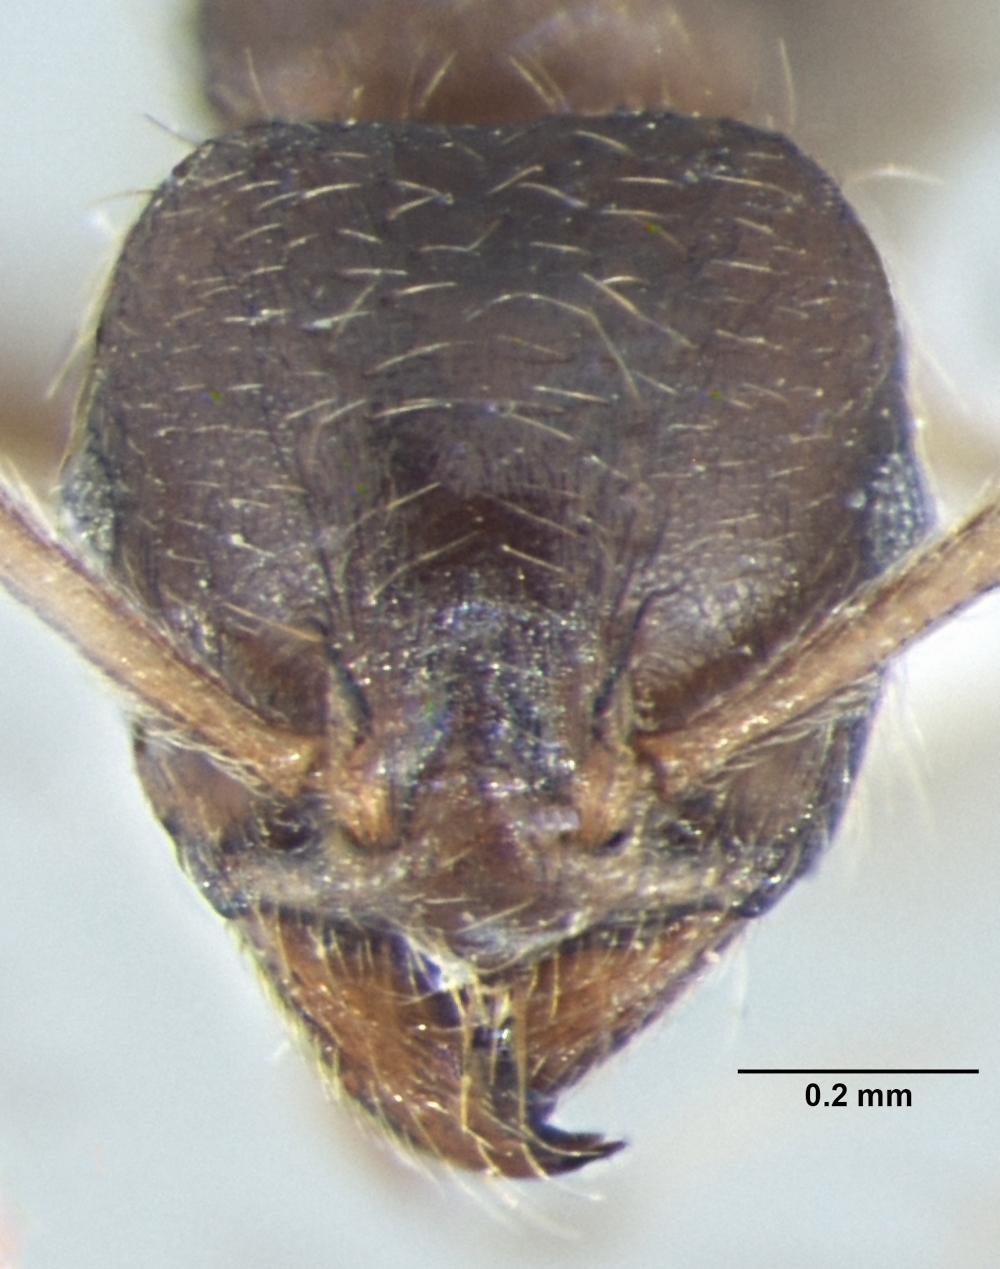 Lophomyrmex terraceensis frontal